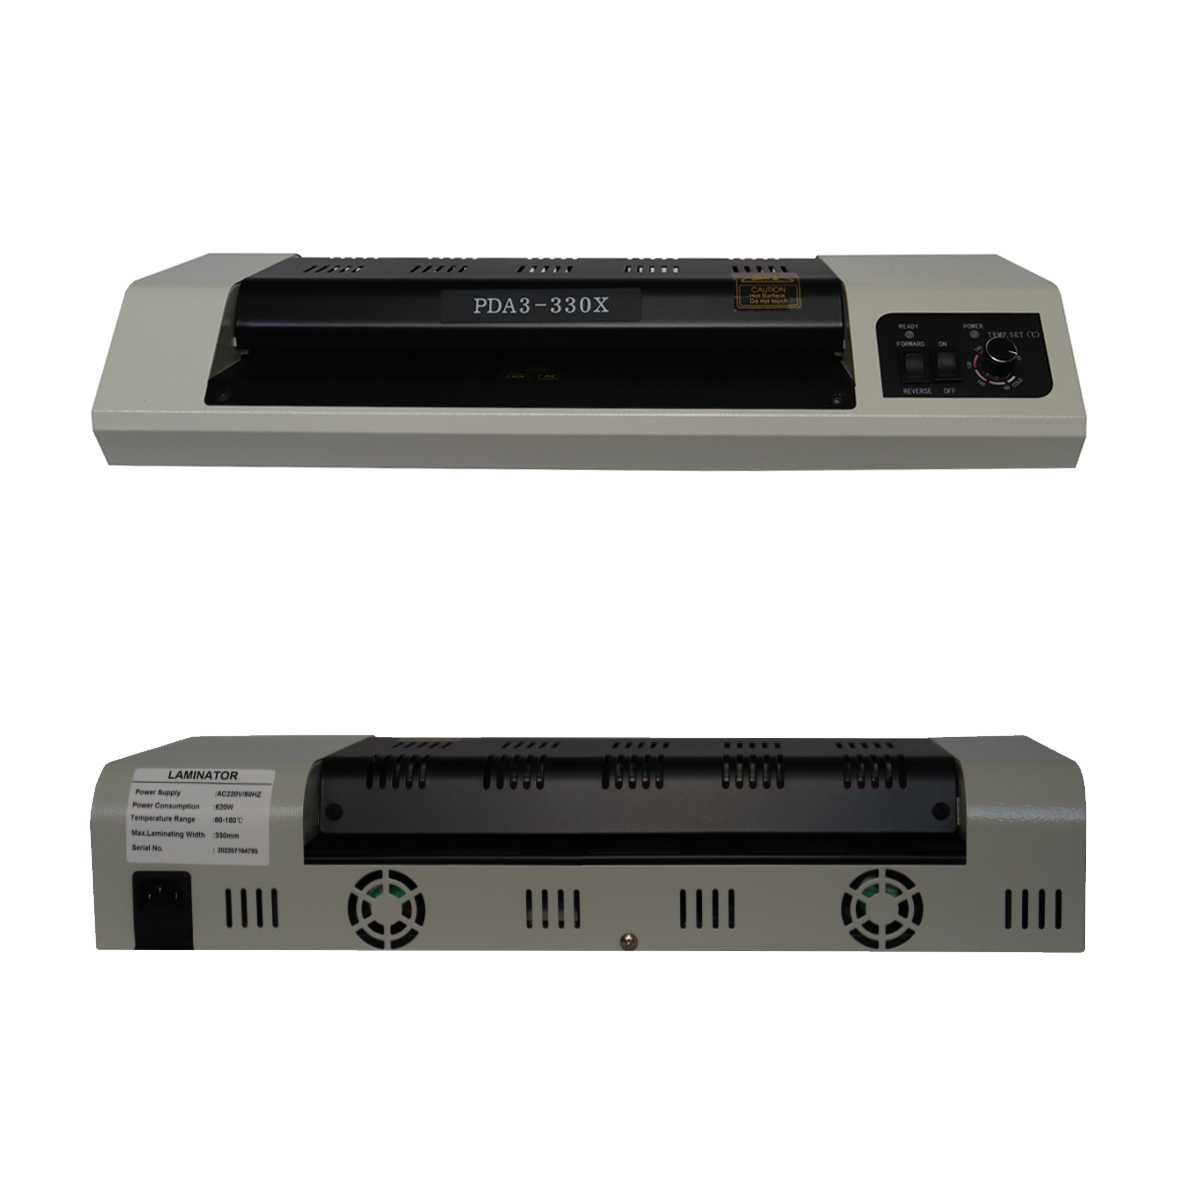 دستگاه لمینت یا پرس کارت مدل PDA3-330X